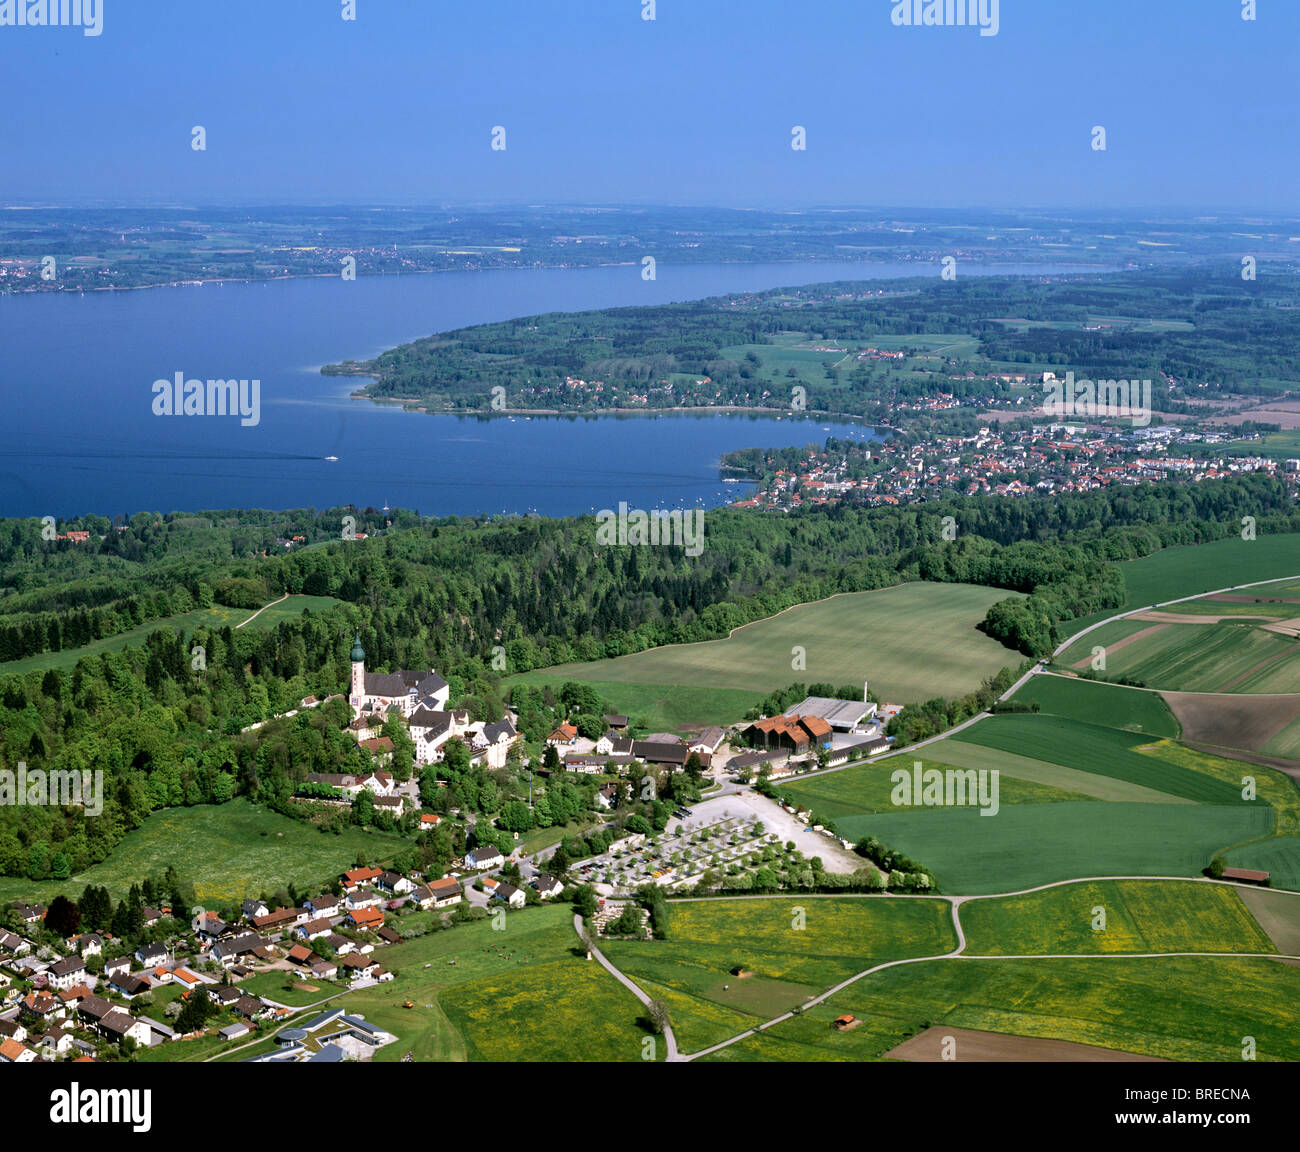 Kloster Andechs monasterio, lugar de peregrinación, Herrsching, el lago Ammersee, la Alta Baviera, Alemania, Europa, vista aérea Foto de stock